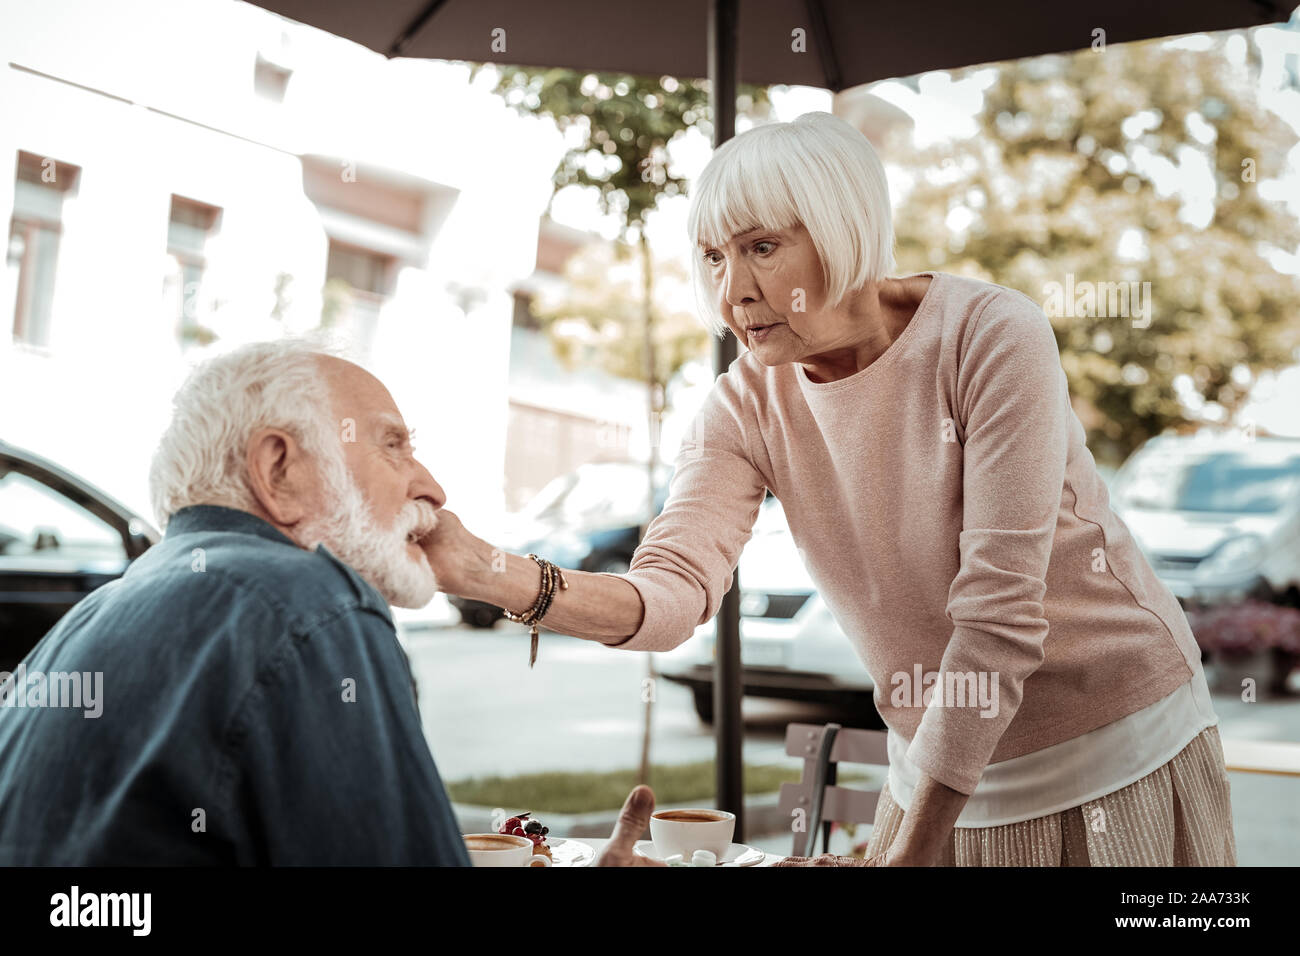 Nice aged woman touching her husband cheek Stock Photo